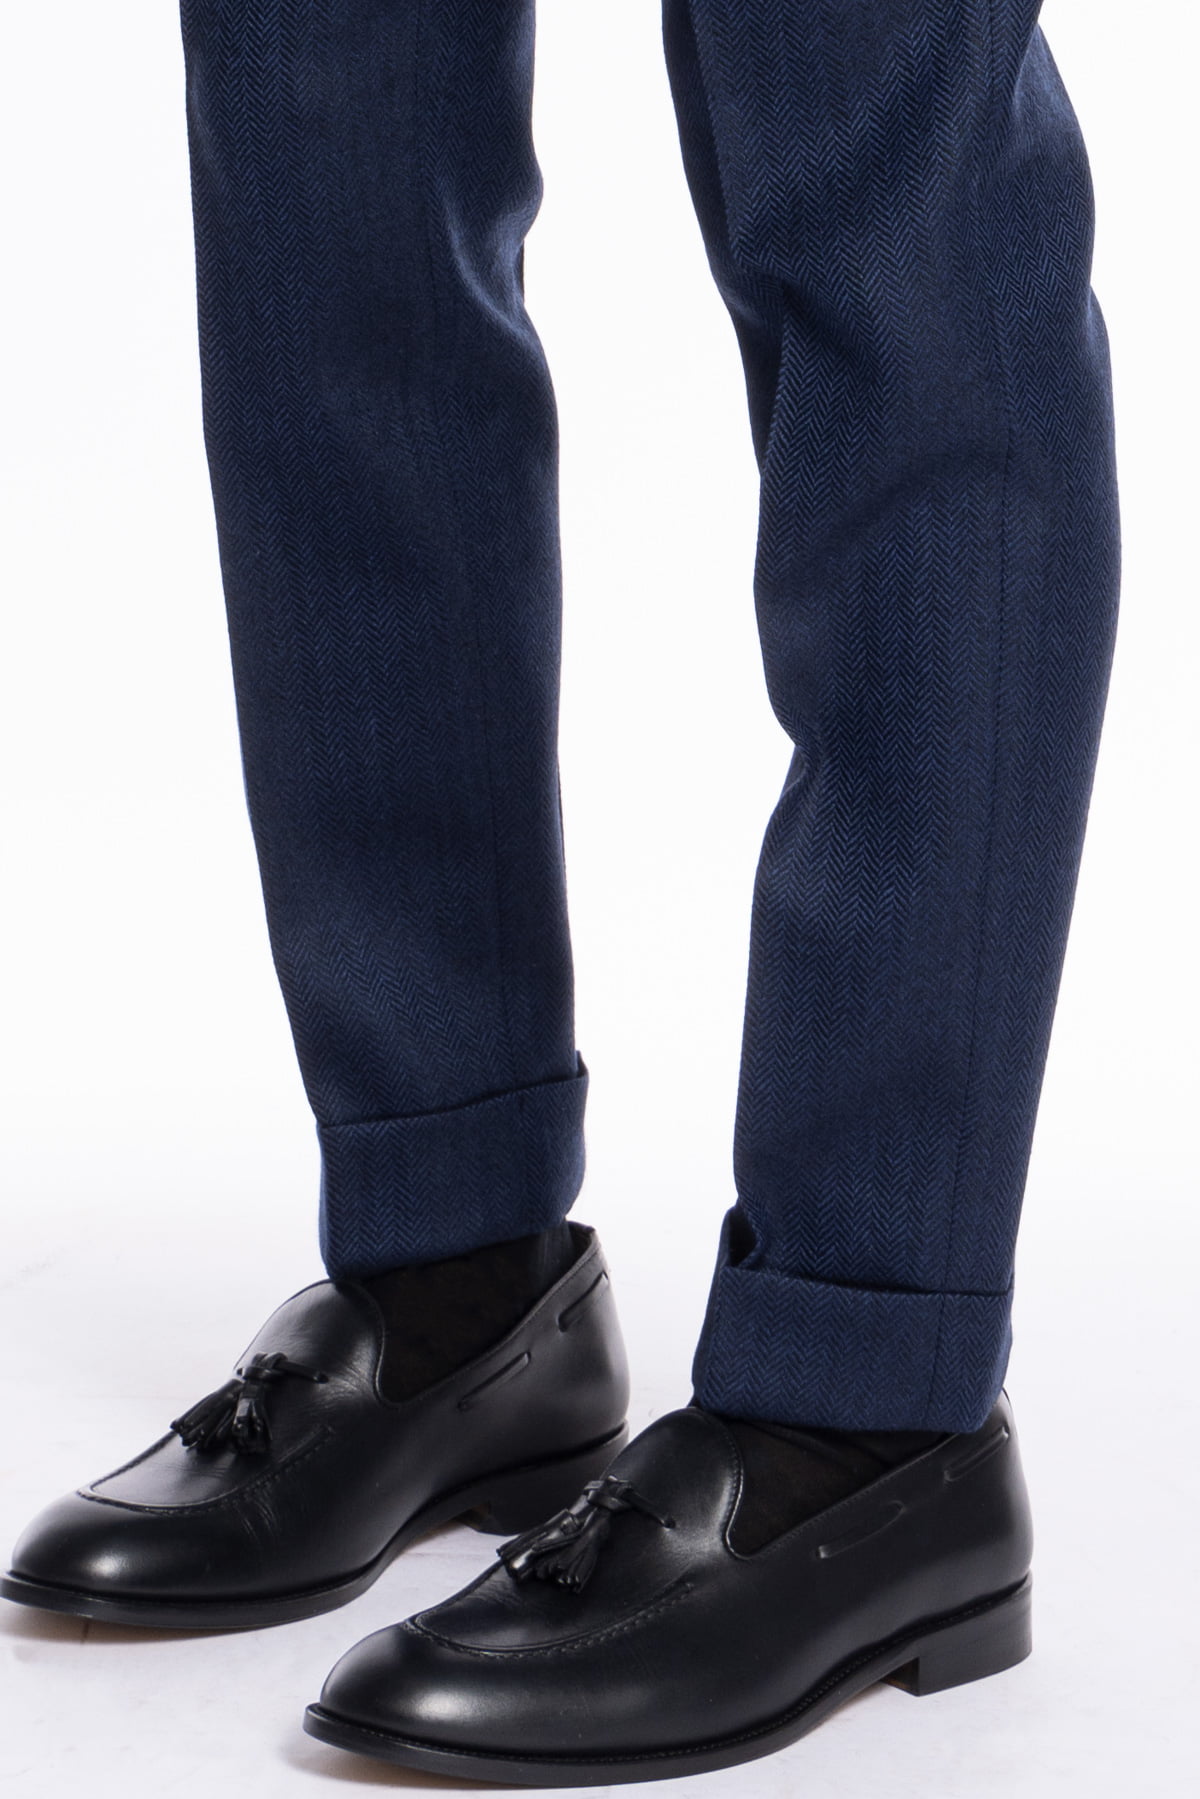 Pantalone uomo blu spigato chiusura prolungata doppia pinces in lana flanella al 100% Bristol Tessuti Napoli